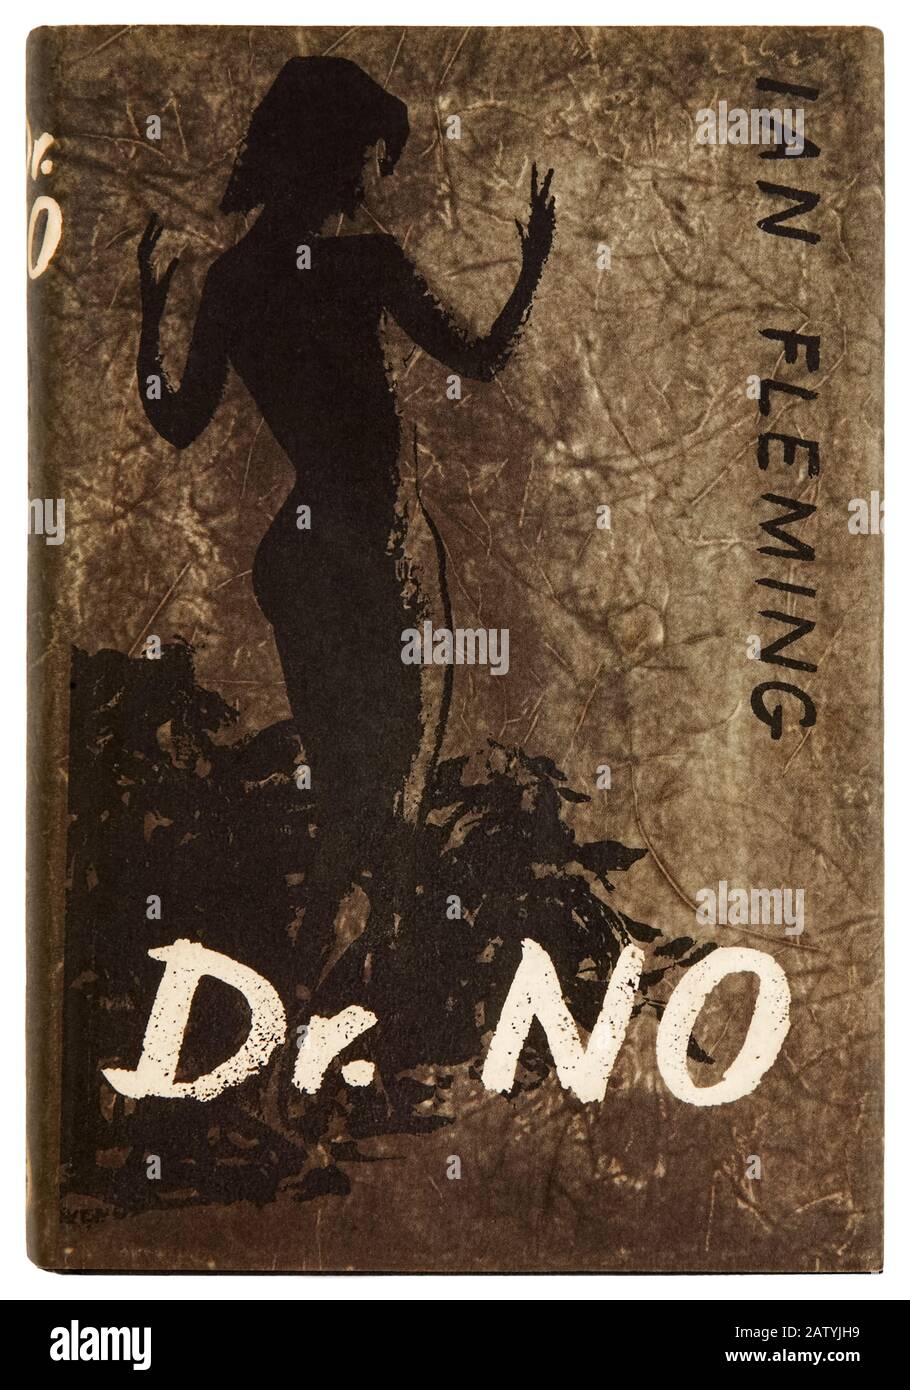 Dr. No di Ian Fleming (1908 – 1964) il sesto romanzo in cui compare l'agente britannico 007, James Bond e il primo ad essere adattato per il grande schermo nel 1962. Fotografia della copertina della prima edizione del 1958 con opere d'arte di Pat Marriott (1920-2002). Foto Stock